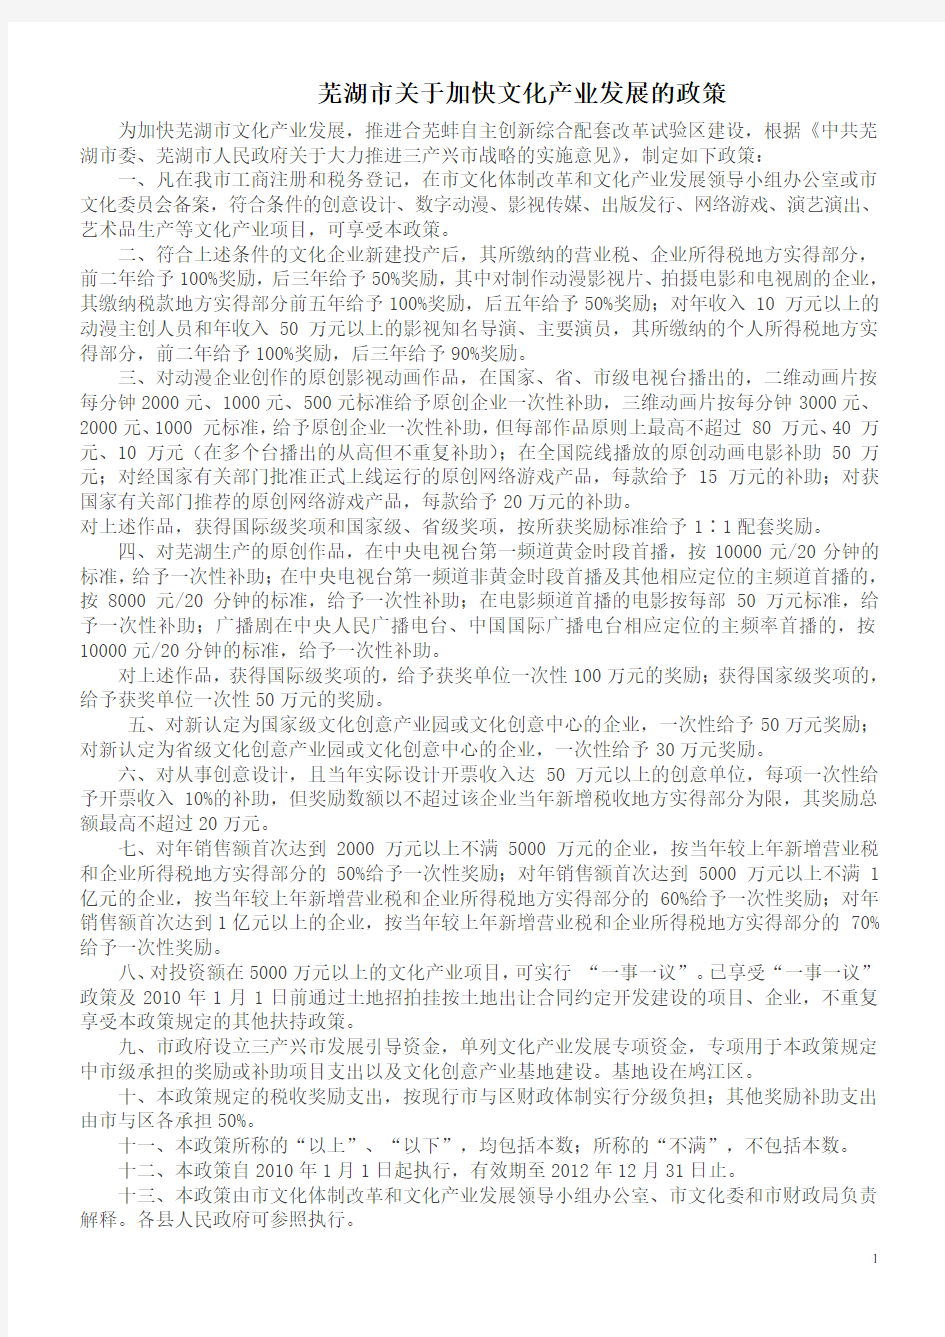 芜湖市关于加快文化产业发展的政策